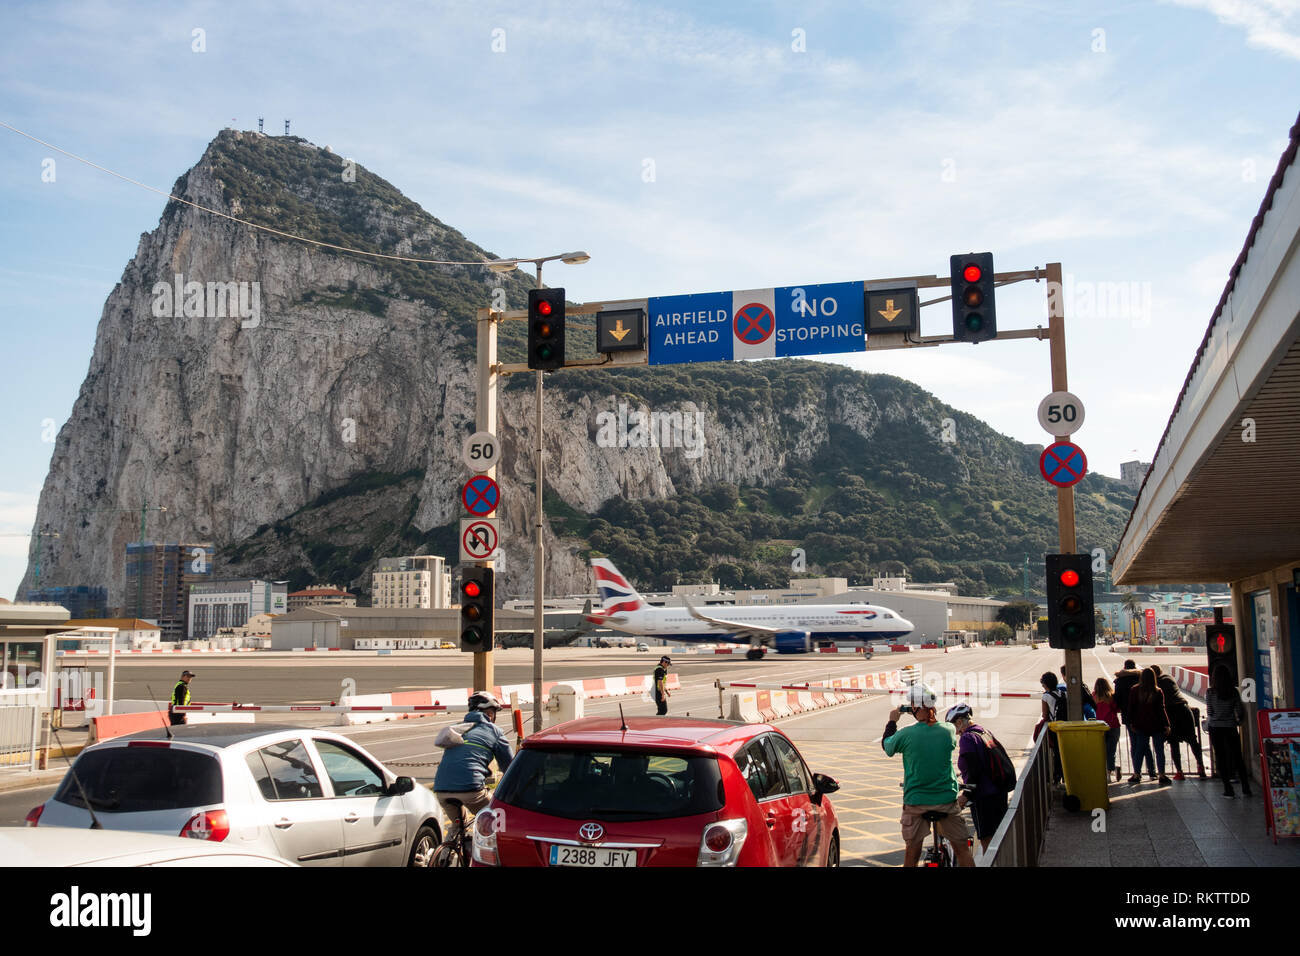 Un Airbus A320 de British Airways se acelera para el despegue en la carretera mientras el tráfico y los peatones espere, en el famoso cruce del aeropuerto en Gibraltar Foto de stock